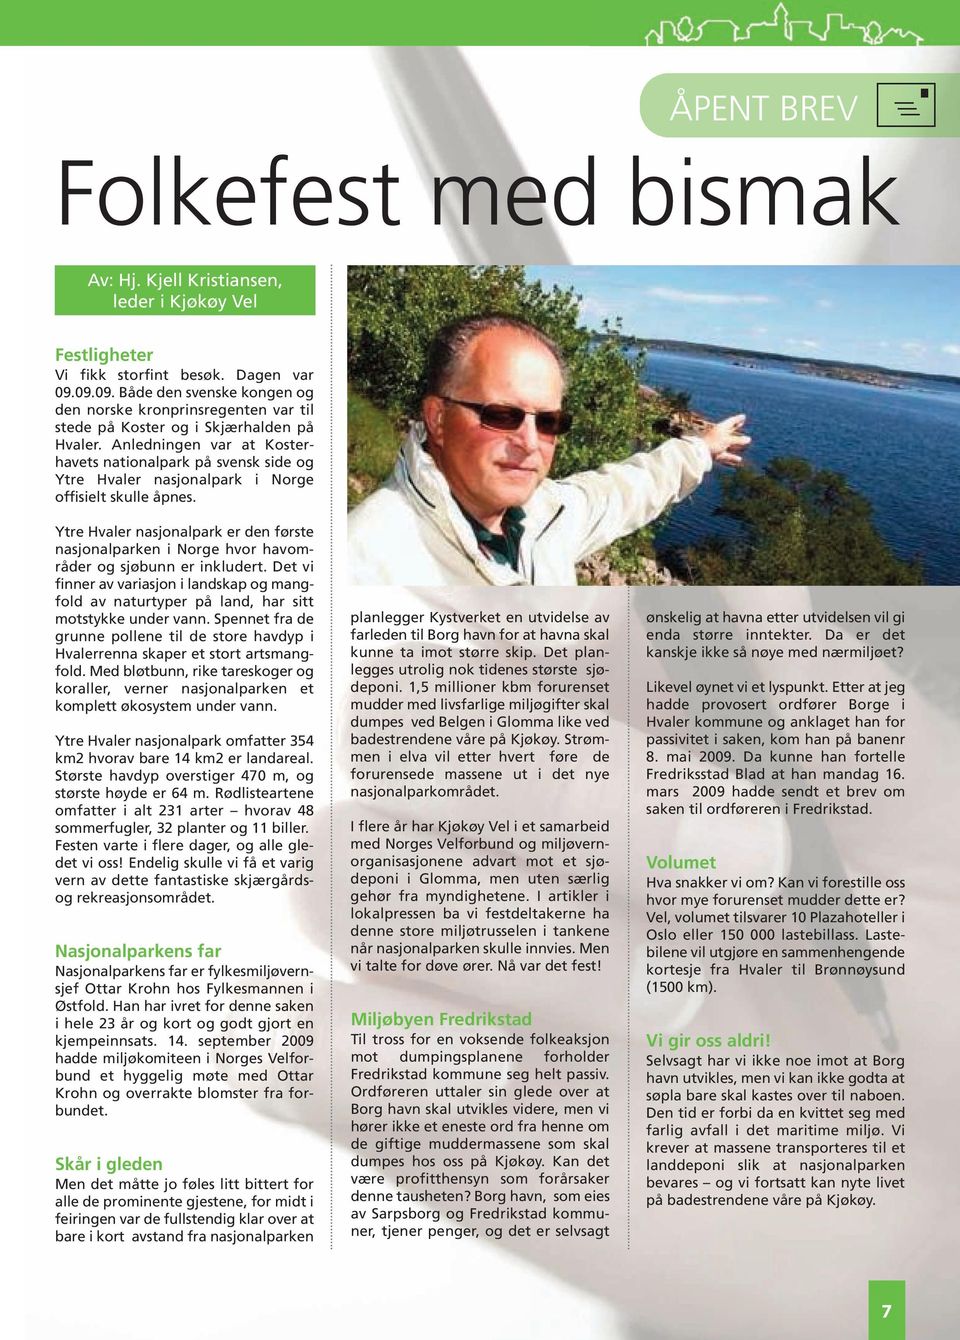 Anledningen var at Kosterhavets nationalpark på svensk side og Ytre Hvaler nasjonalpark i Norge offisielt skulle åpnes.